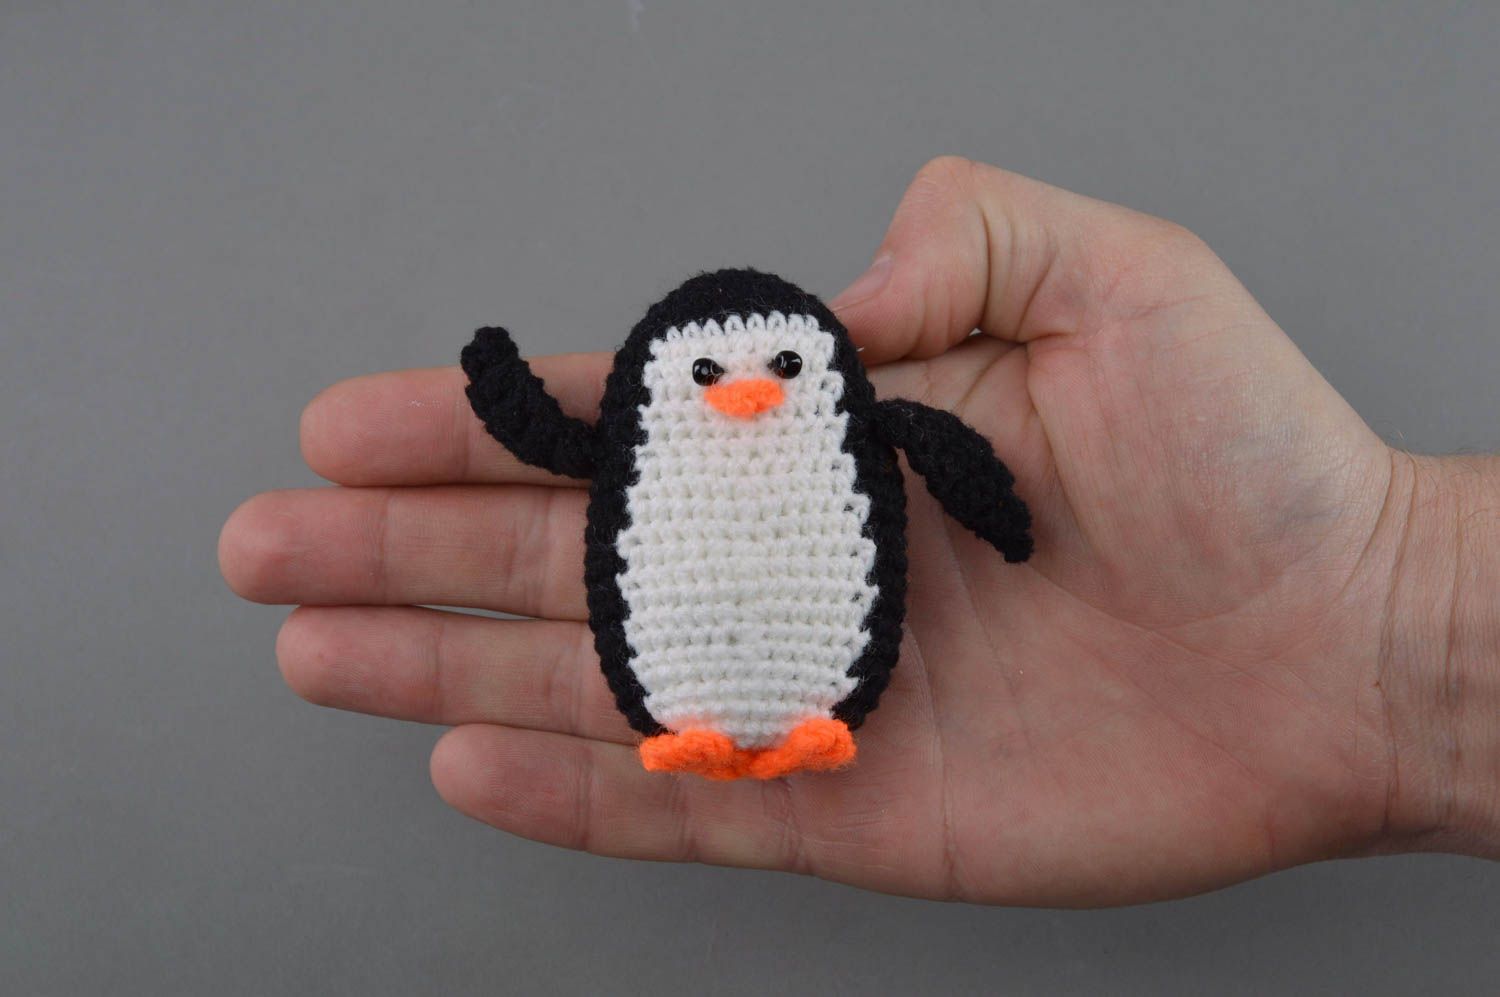 Смешная маленькая игрушка в виде пингвина черно-белая вязаная вручную для детей фото 4